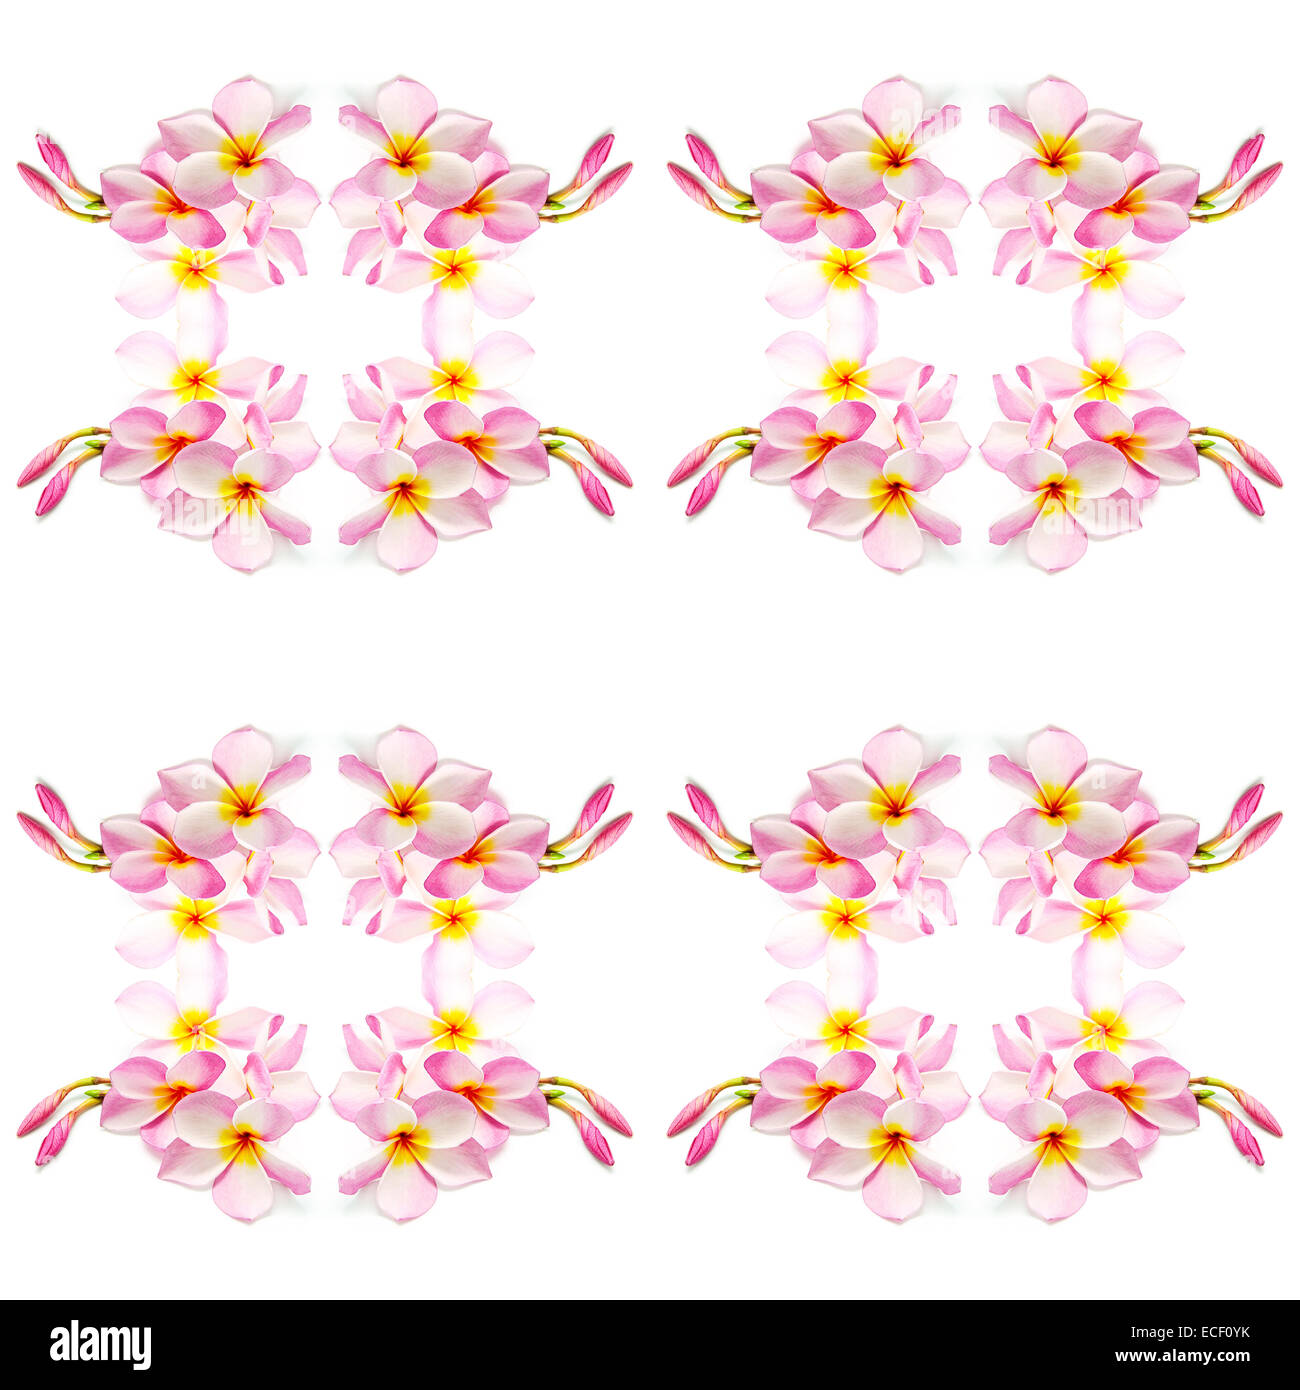 Di un bel colore rosa Plumeria fiore, isolato su uno sfondo bianco Foto Stock